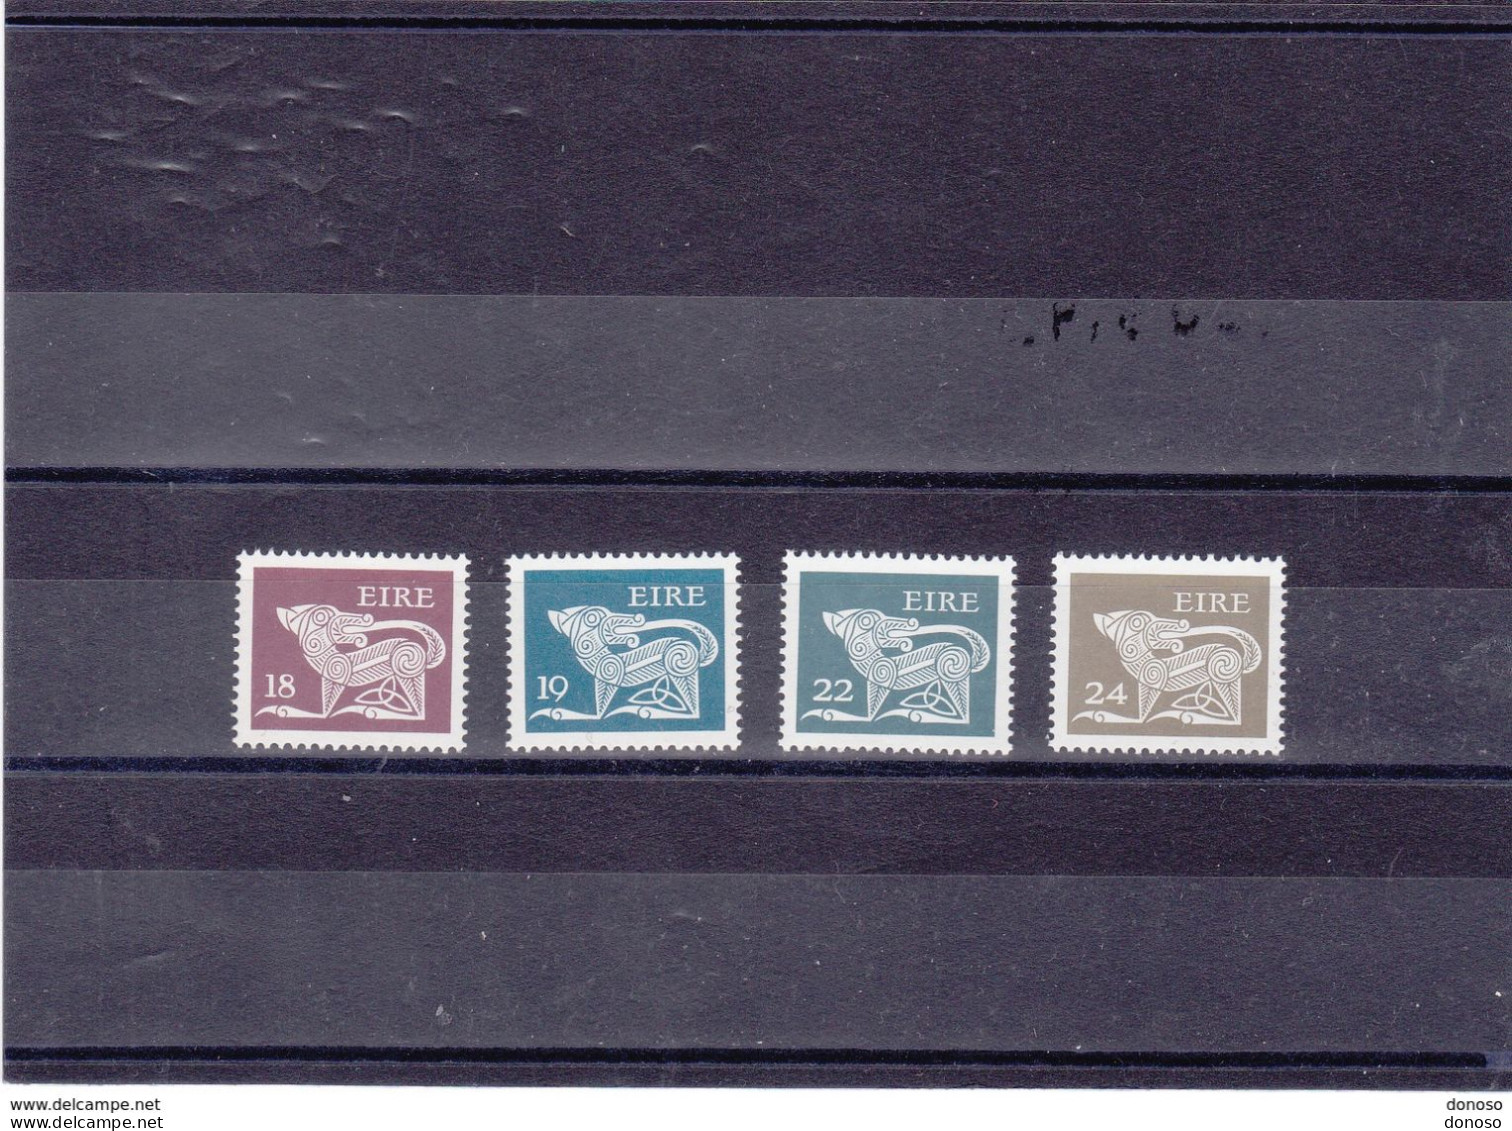 IRLANDE 1981 Série Courante Yvert 442-445 NEUF** MNH Cote 6,50 Euros - Nuovi